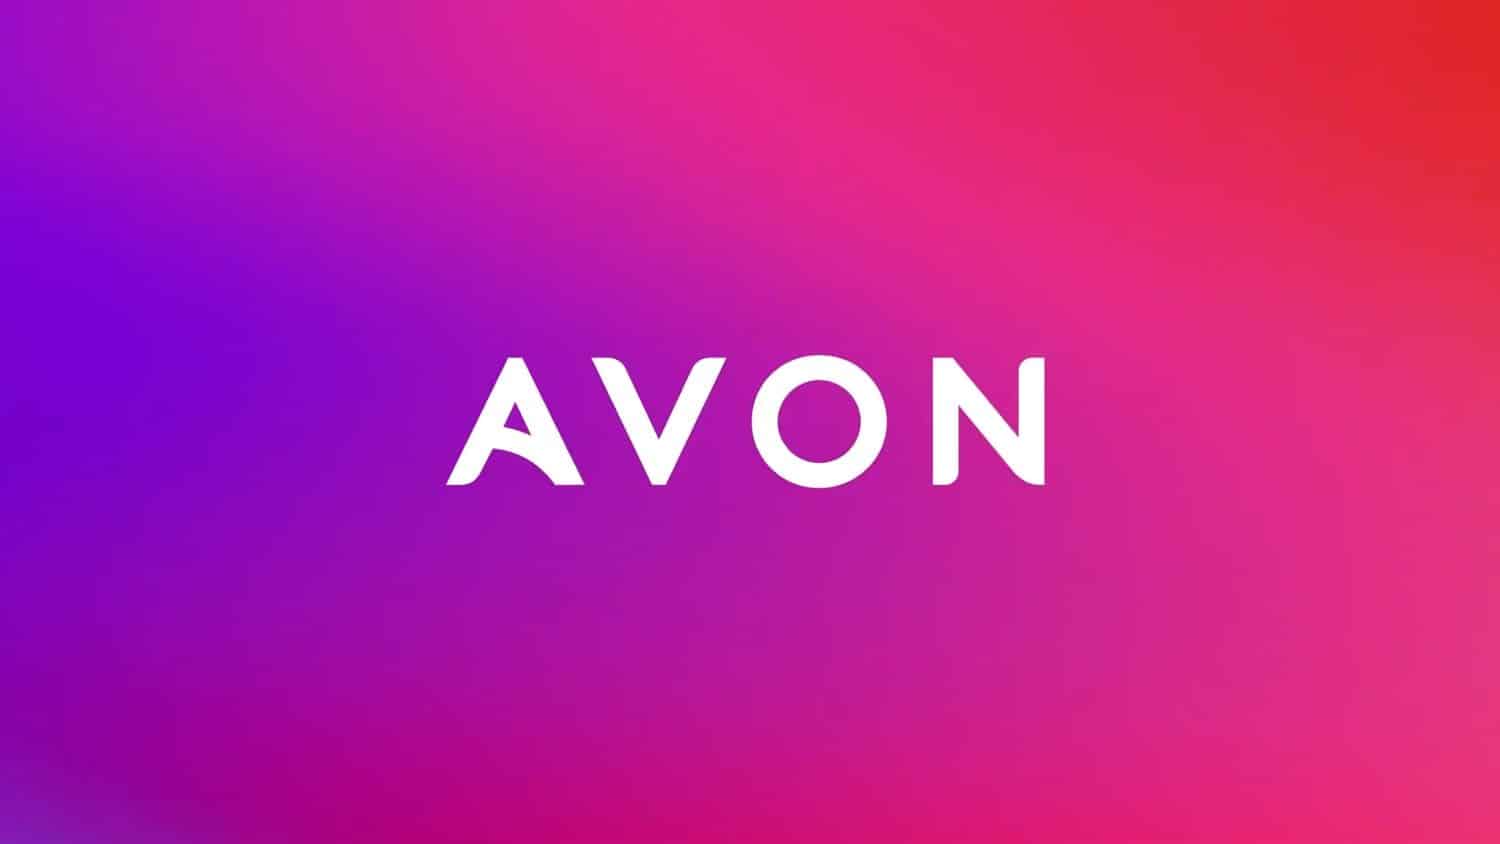 Avon - (Reprodução Internet)